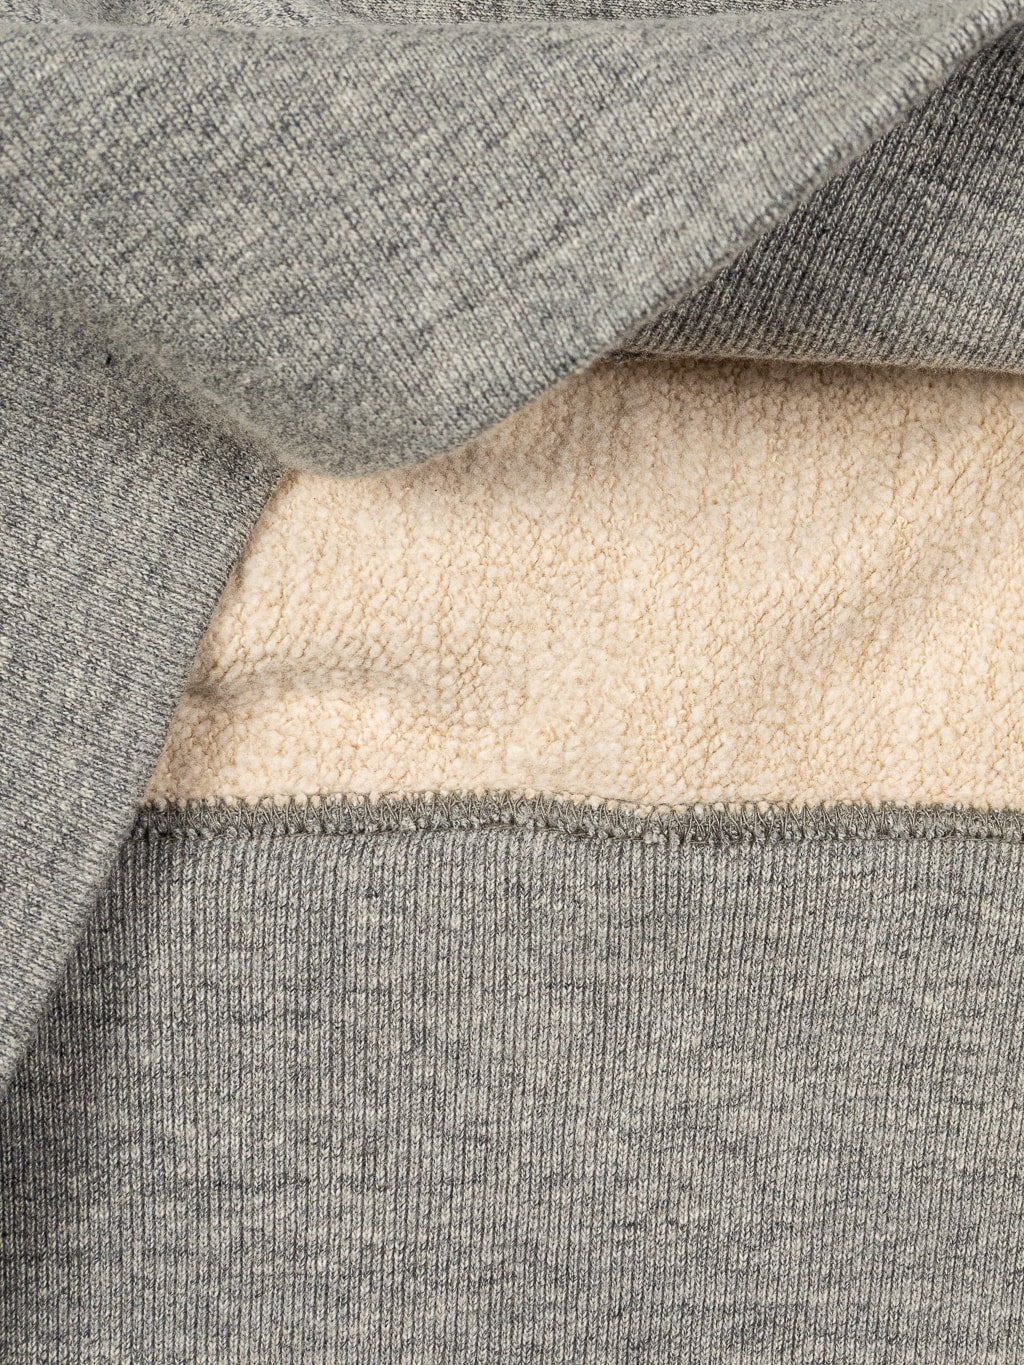 UES Puca Purcara Loopwheeled Sweatshirt grey heavyweight  interior fabric